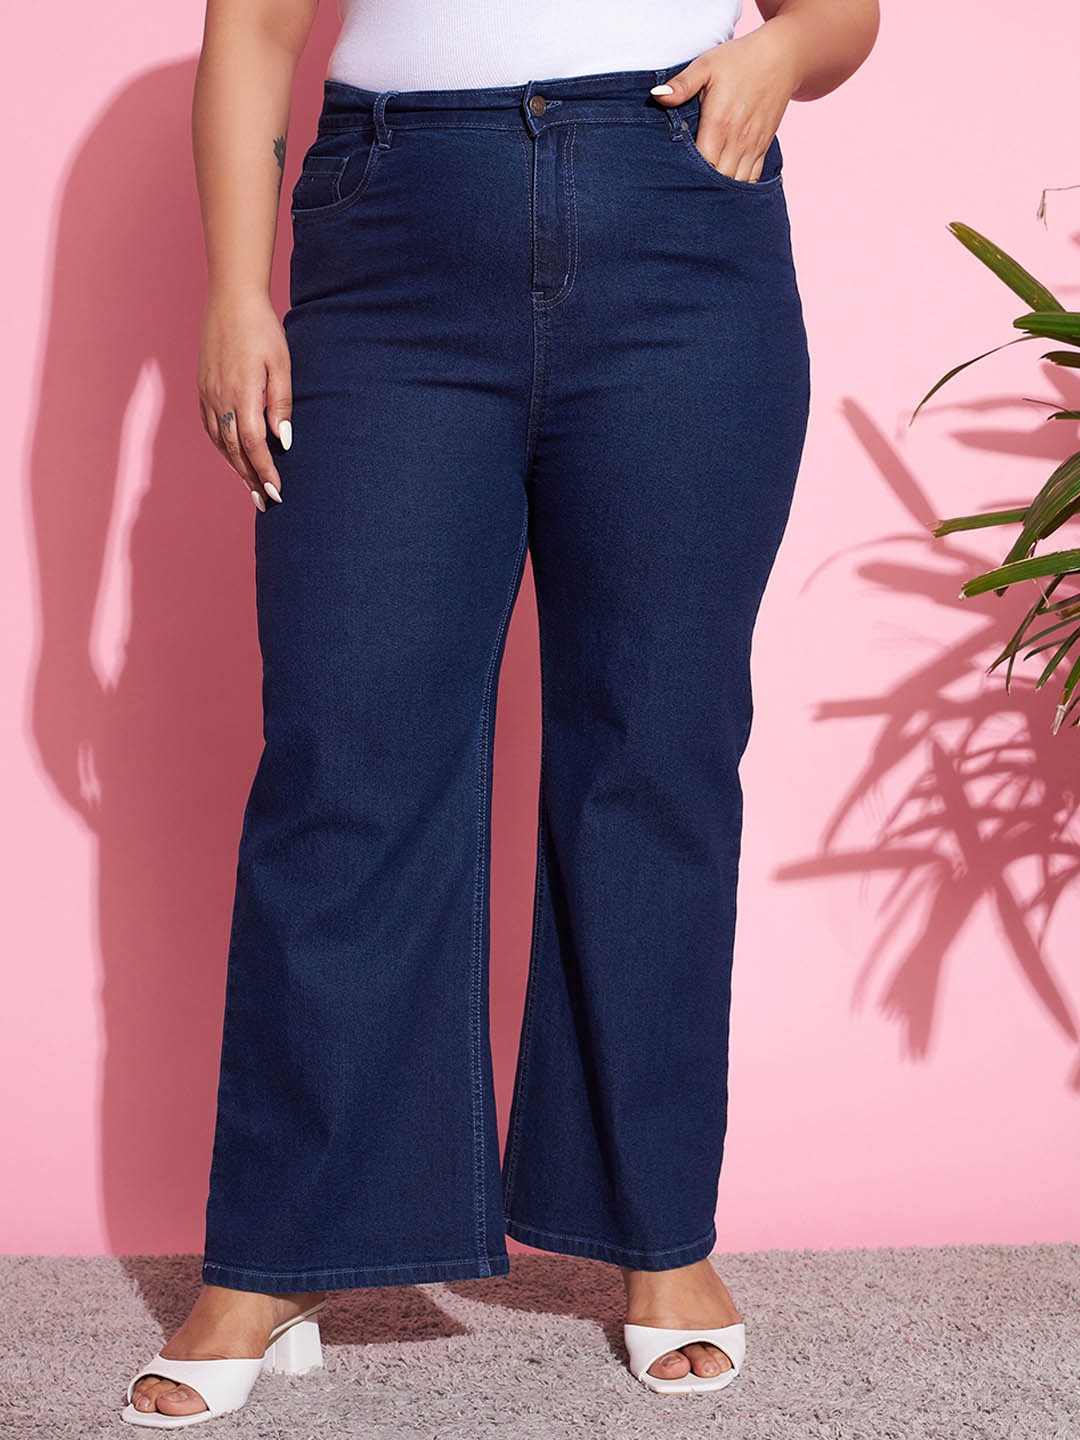 Buy Women Black Wide Leg Flared Jeans Online at Sassafras